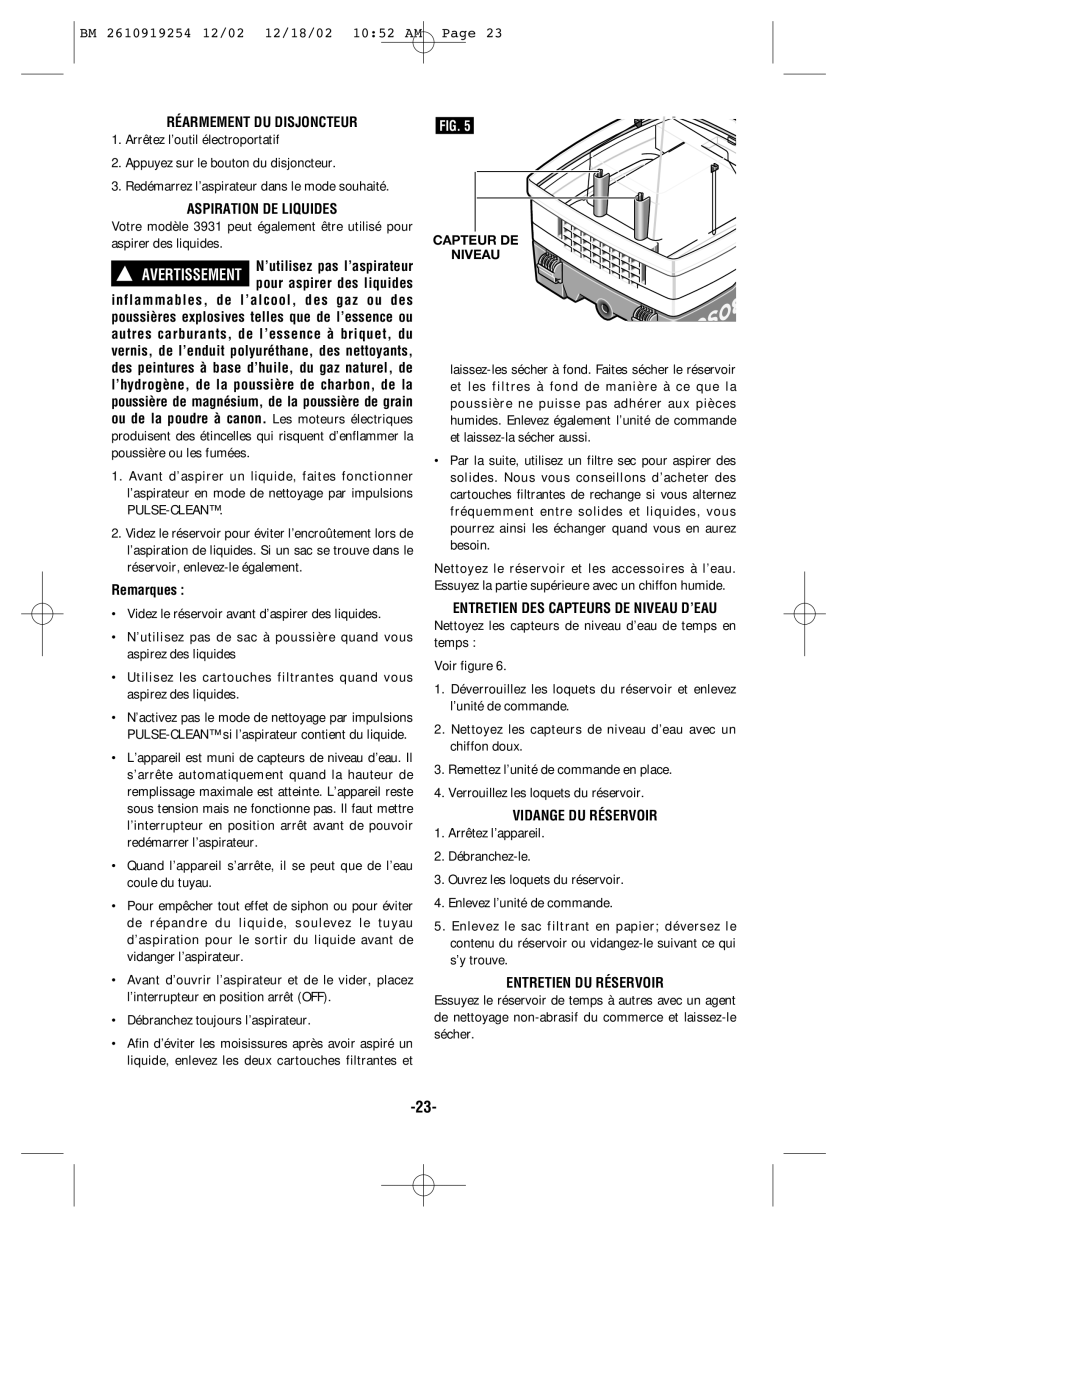 Bosch Appliances 3931 manual Réarmement DU Disjoncteur, Aspiration DE Liquides, Entretien DES Capteurs DE Niveau D’EAU 